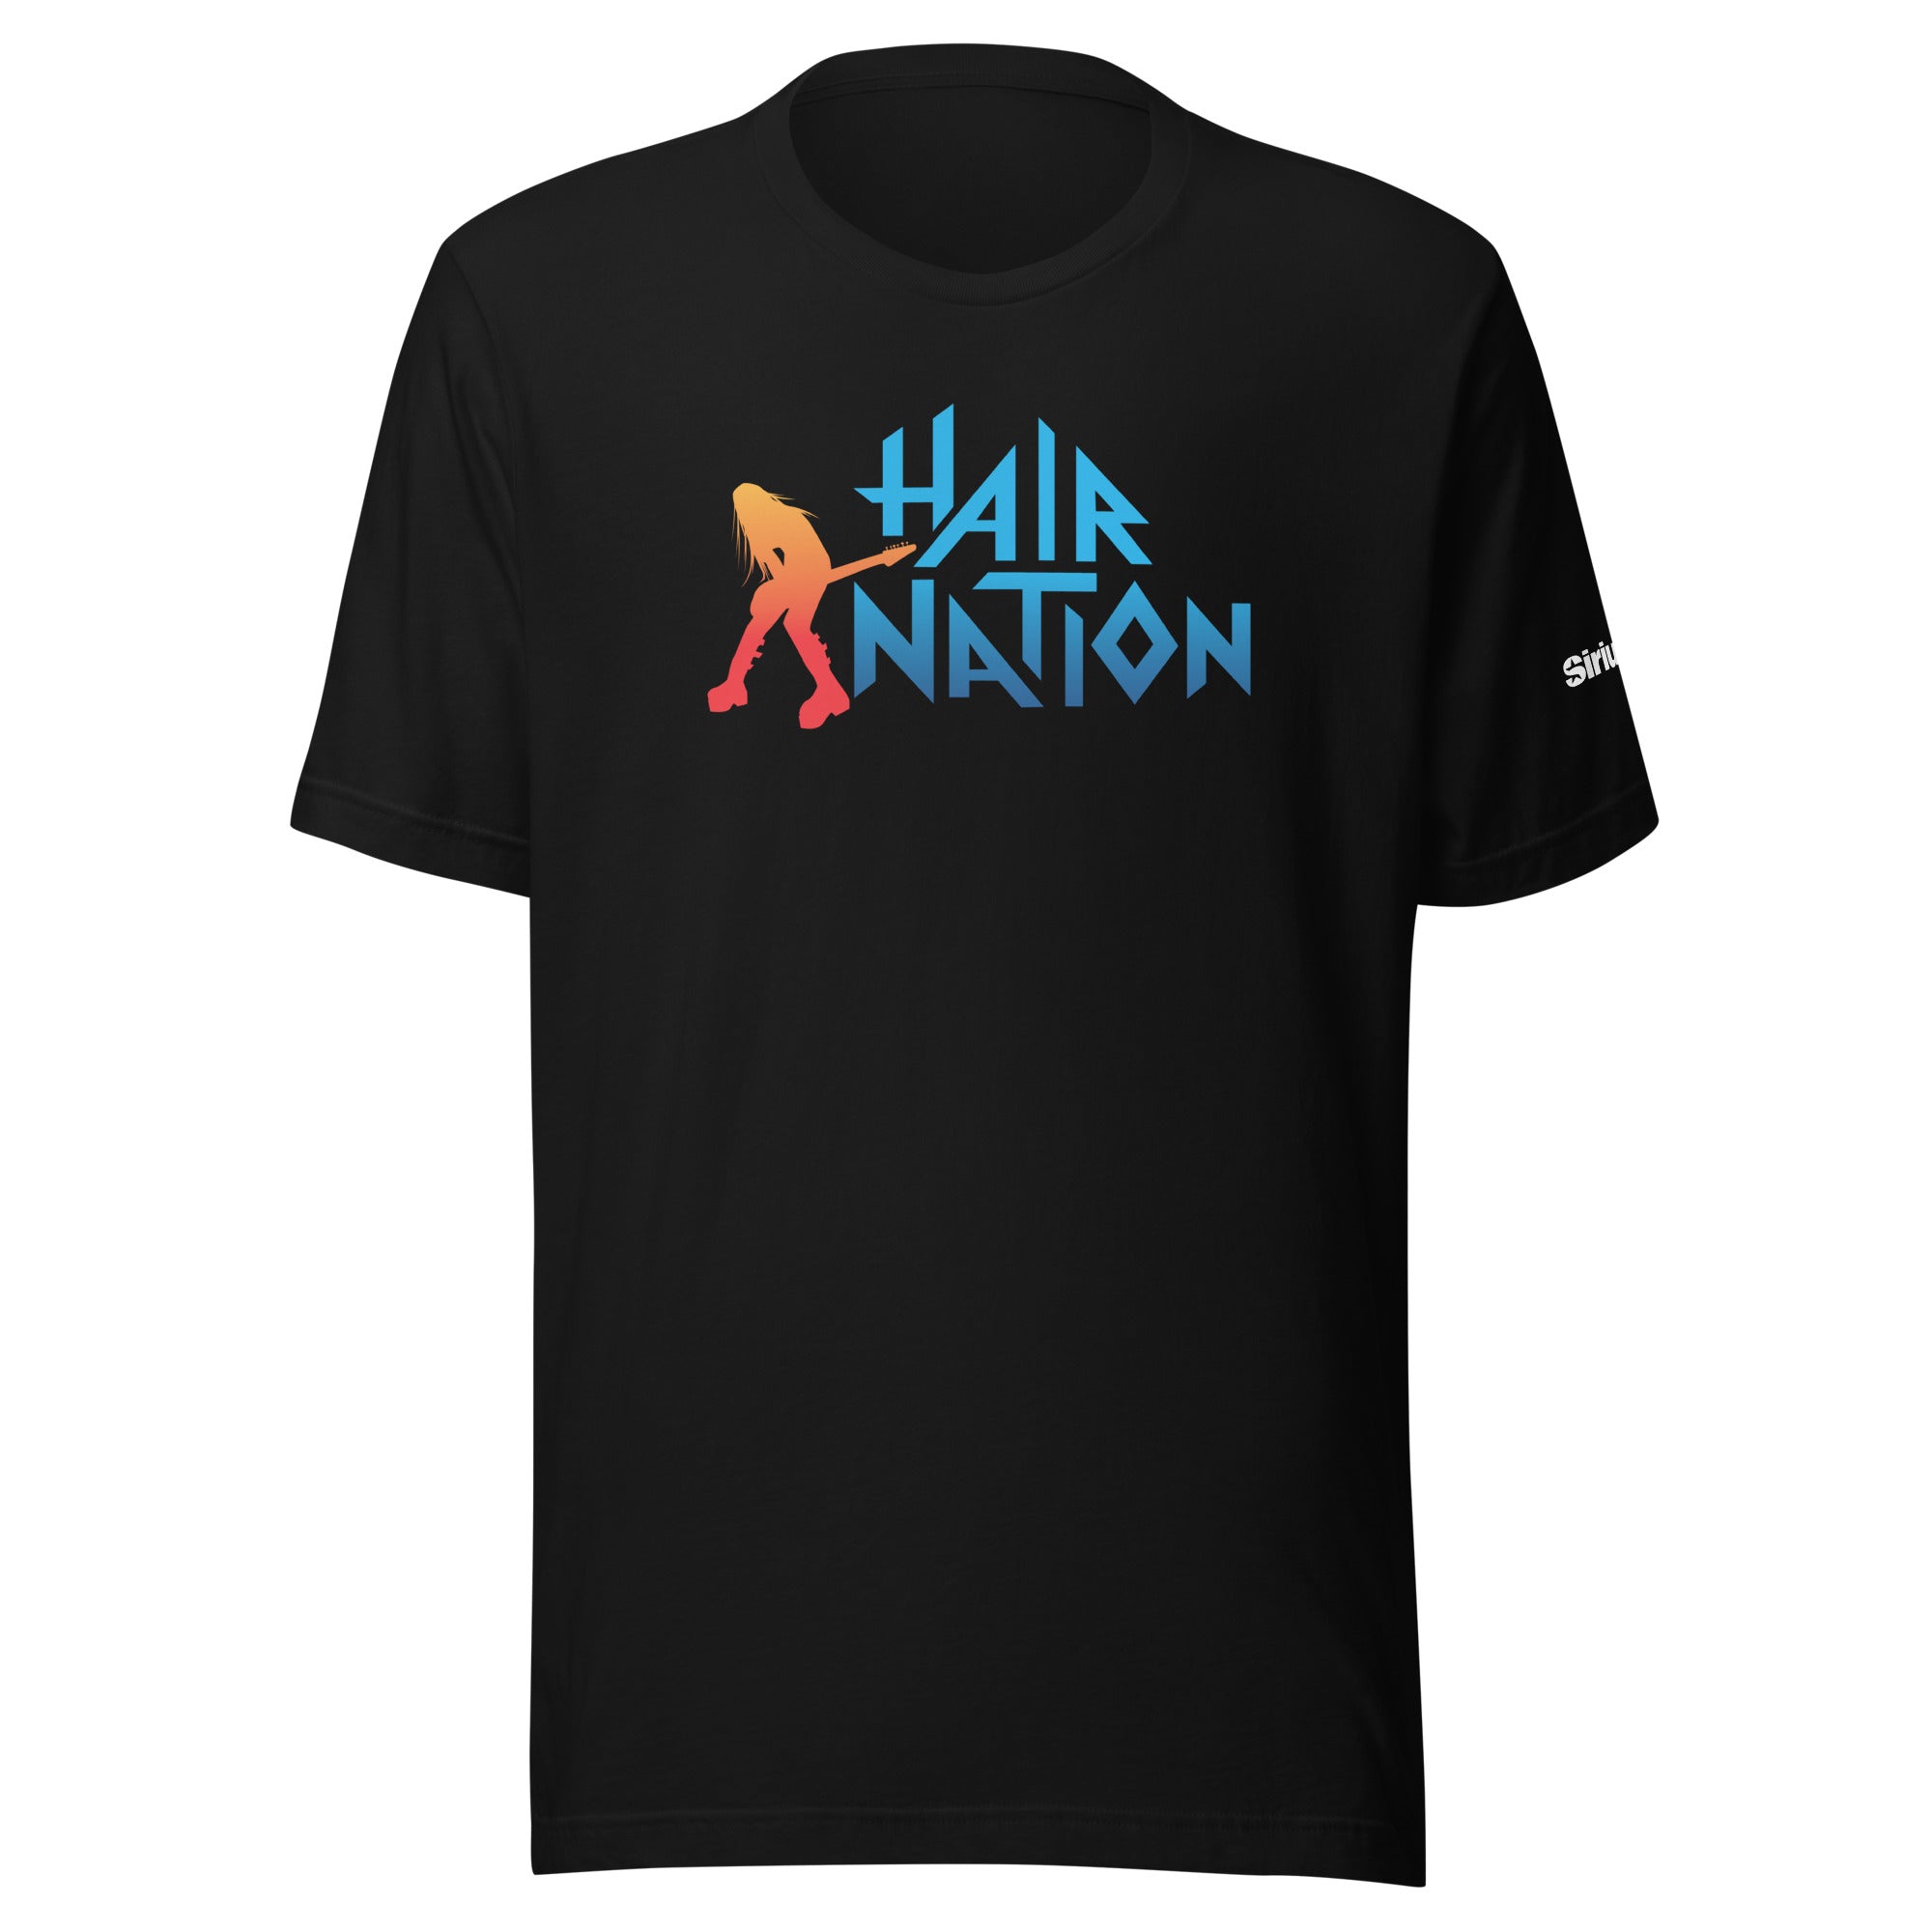 Hair Nation: T-shirt (Black)